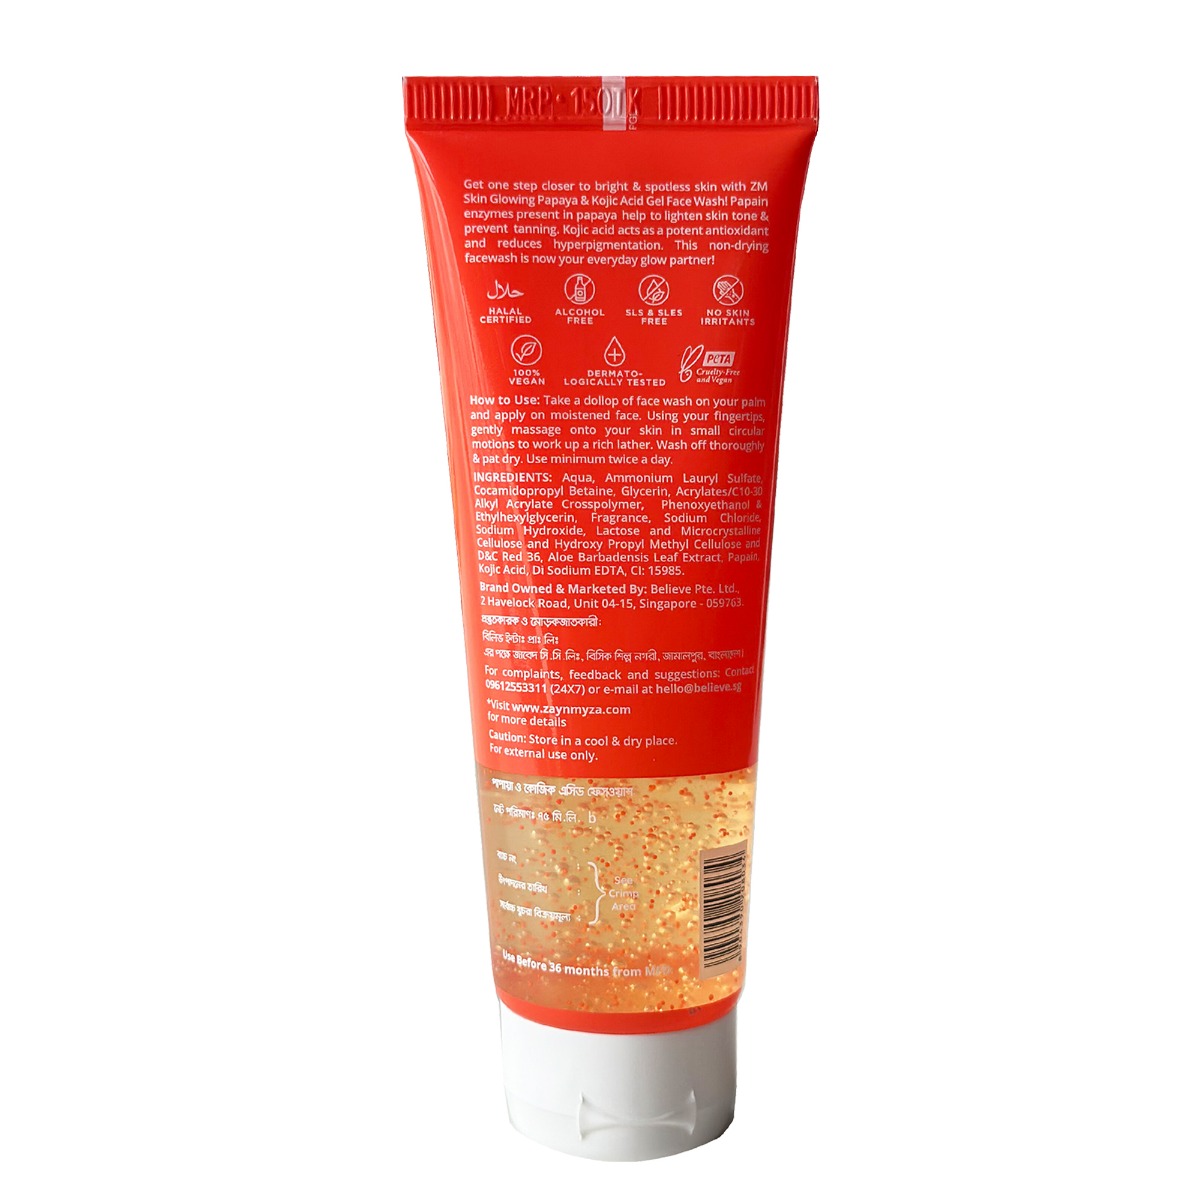 ZM Skin Glowing Gel Face Wash Papaya and Kojic Acid (75ml)